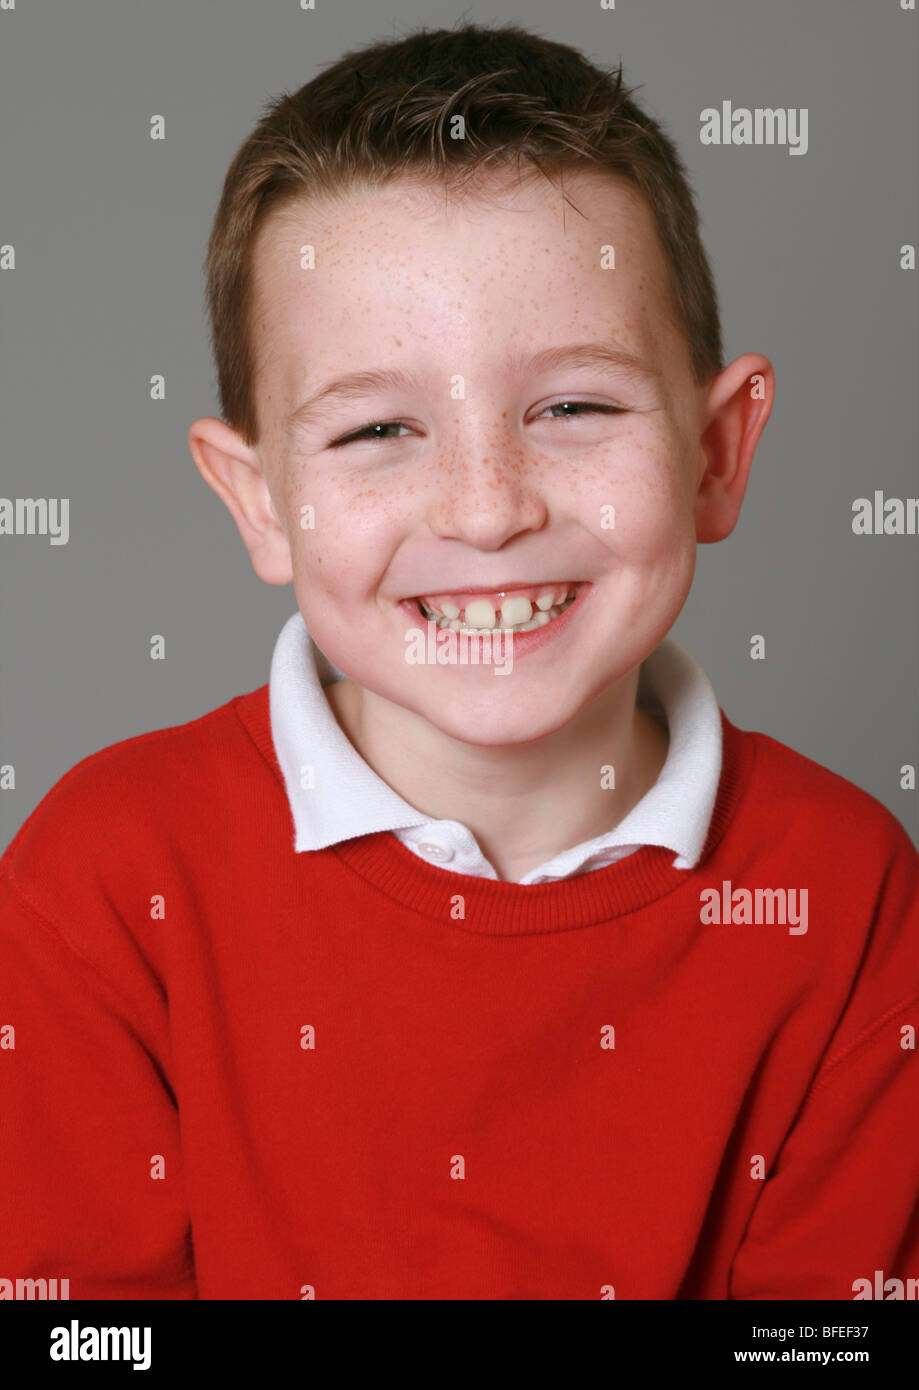 Kleiner Junge lächelnd Stockfoto